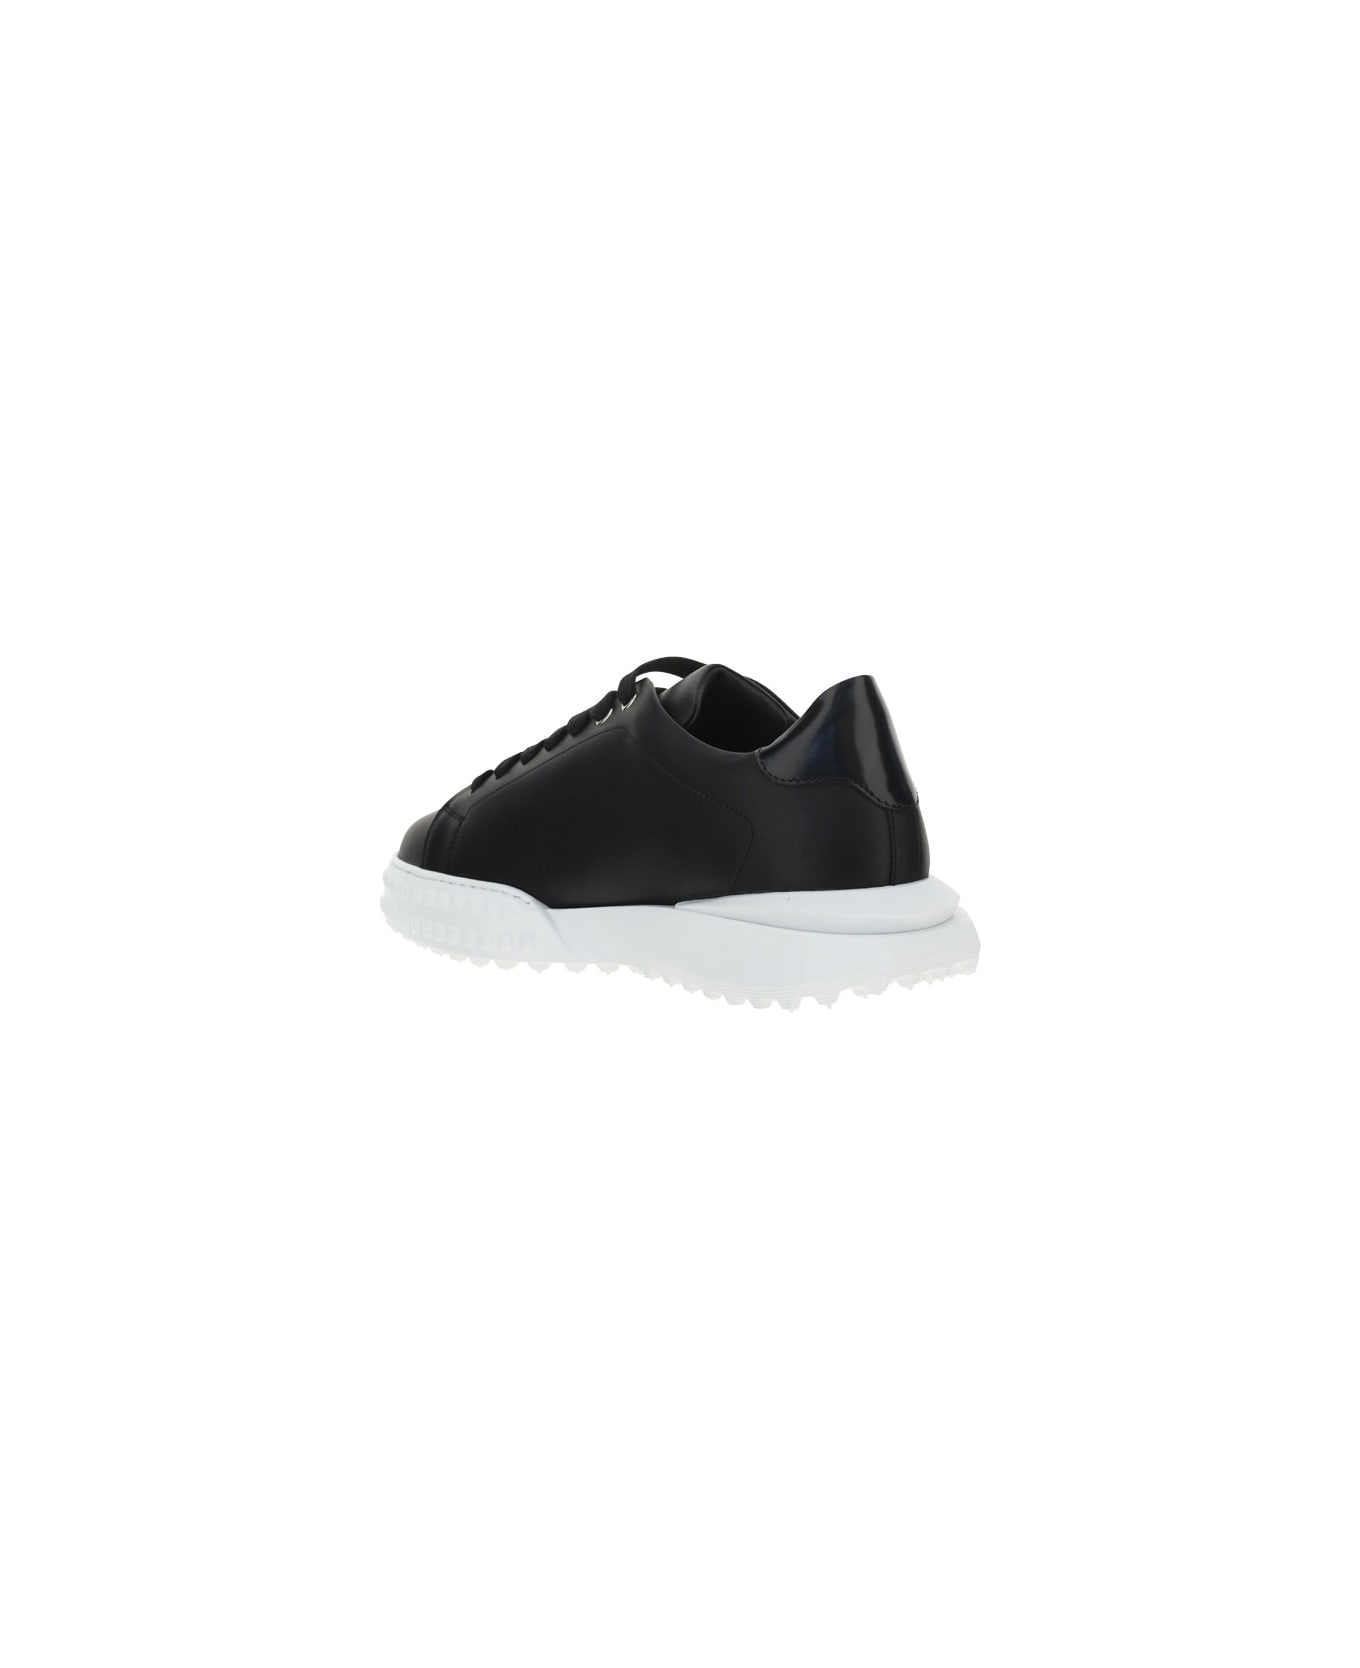 Philipp Plein Sneakers - Black/white